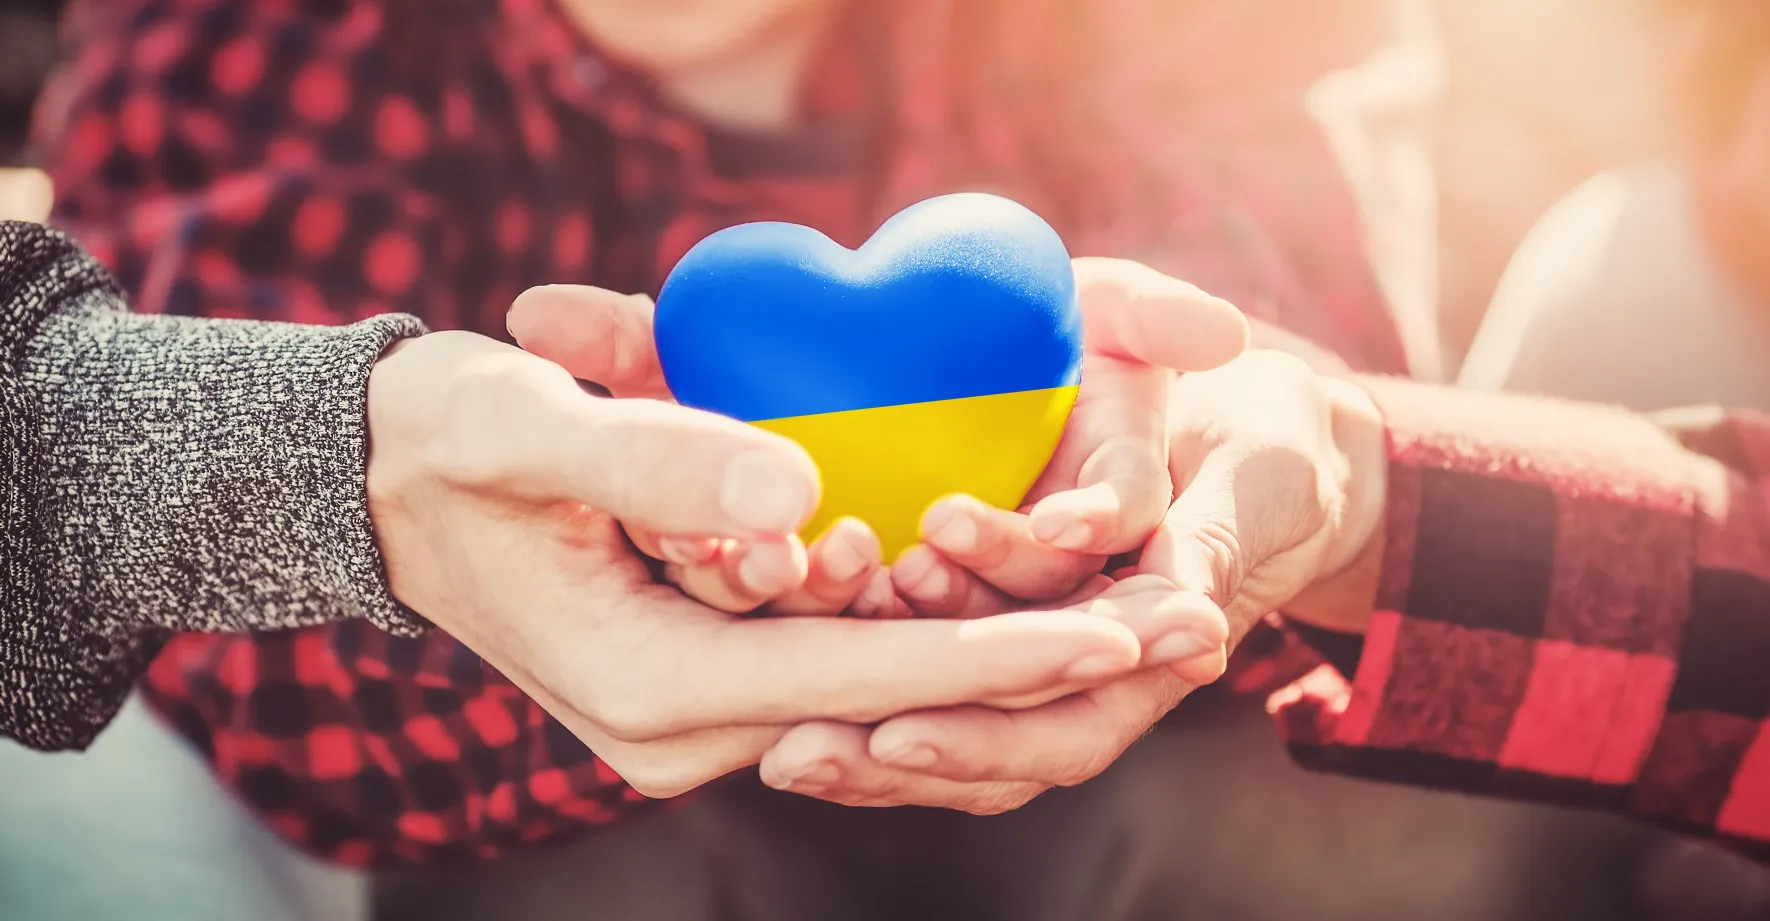 Ukrajinci se stále vezou na vítězné vlně, skoro všichni věří v porážku Ruska